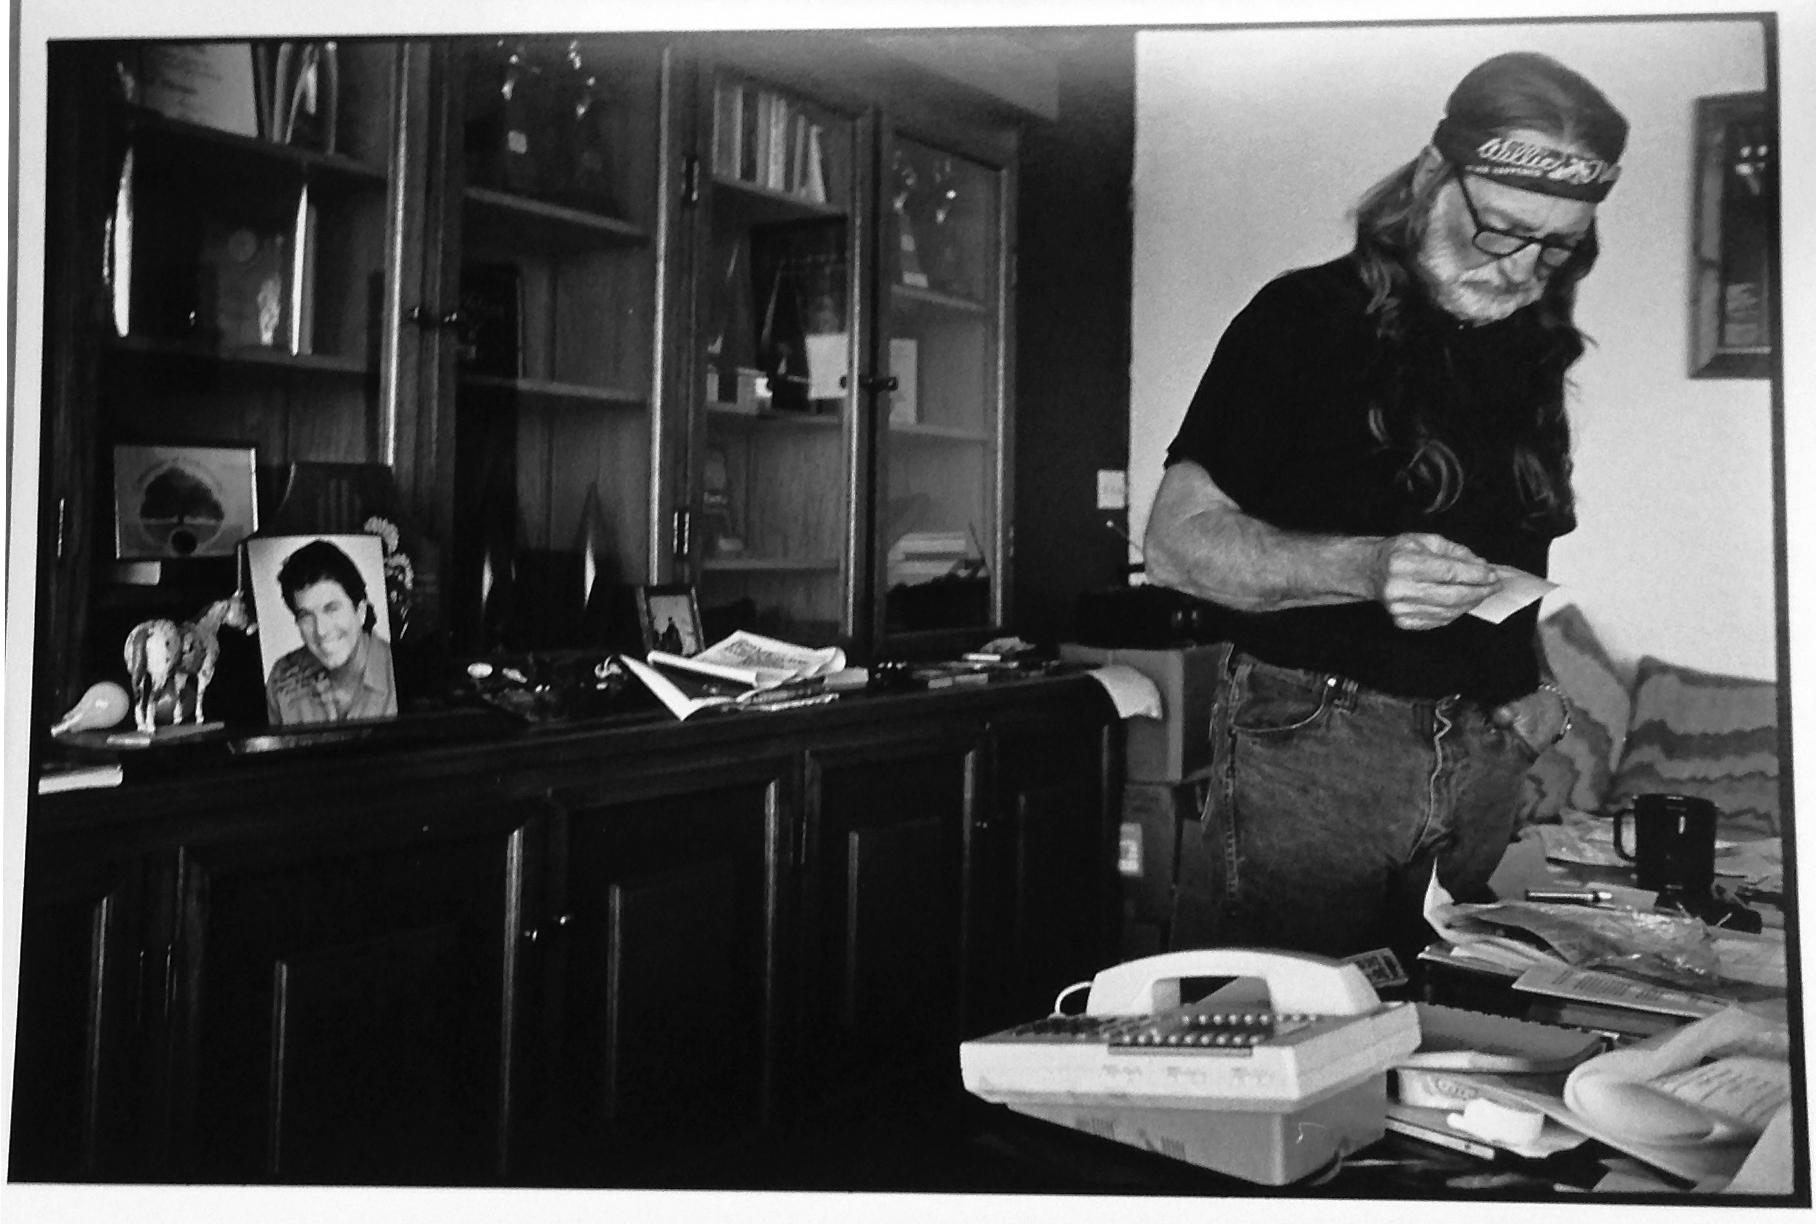 Willy Nelson, Texas, photographie de portrait d'un chanteur de musique Country, années 1990 - Contemporain Photograph par Leonard Freed